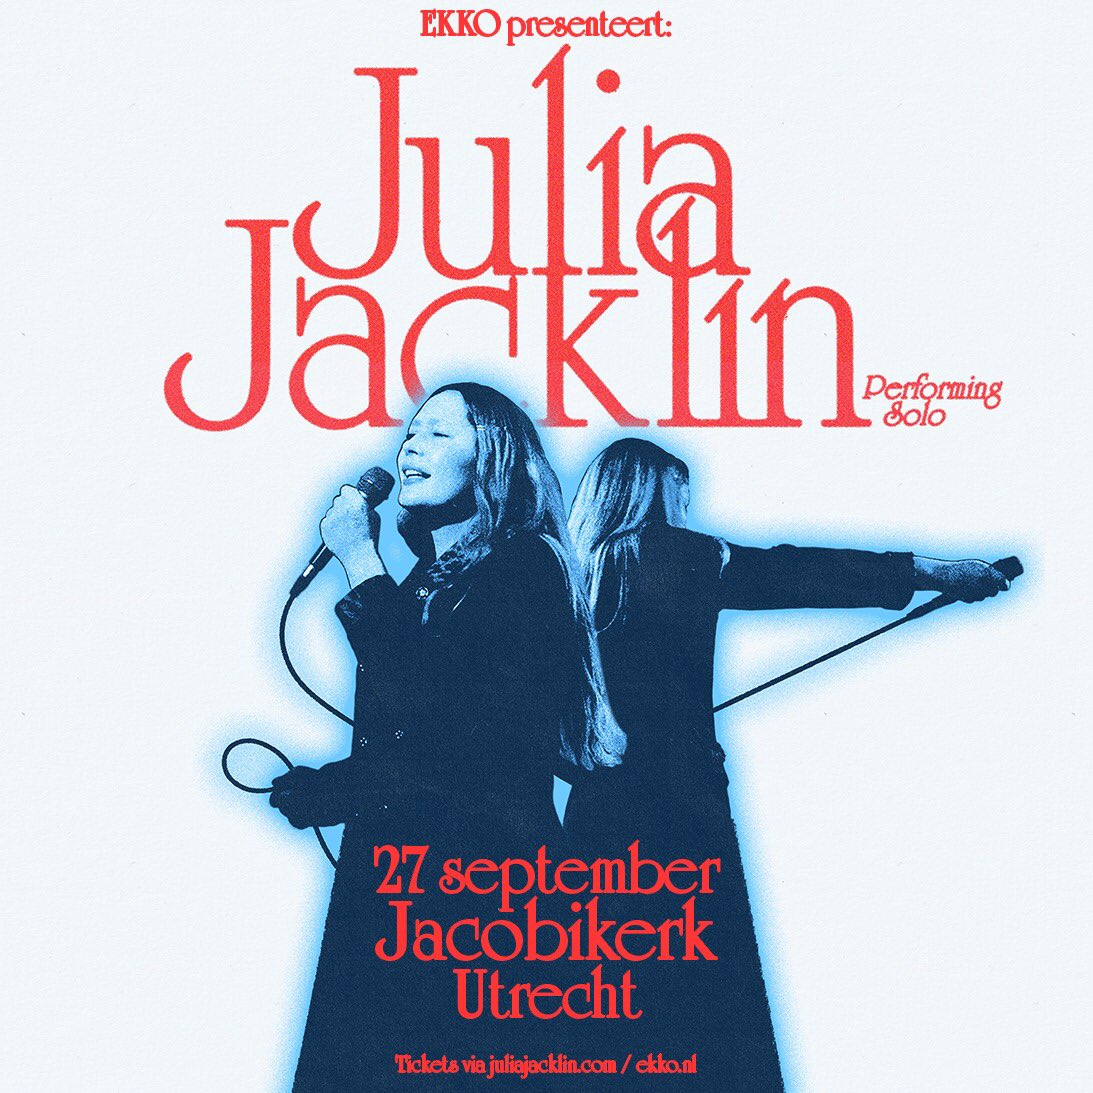 Trots op: op 27 september presenteert EKKO een soloshow van Julia Jacklin in de Jacobikerk.